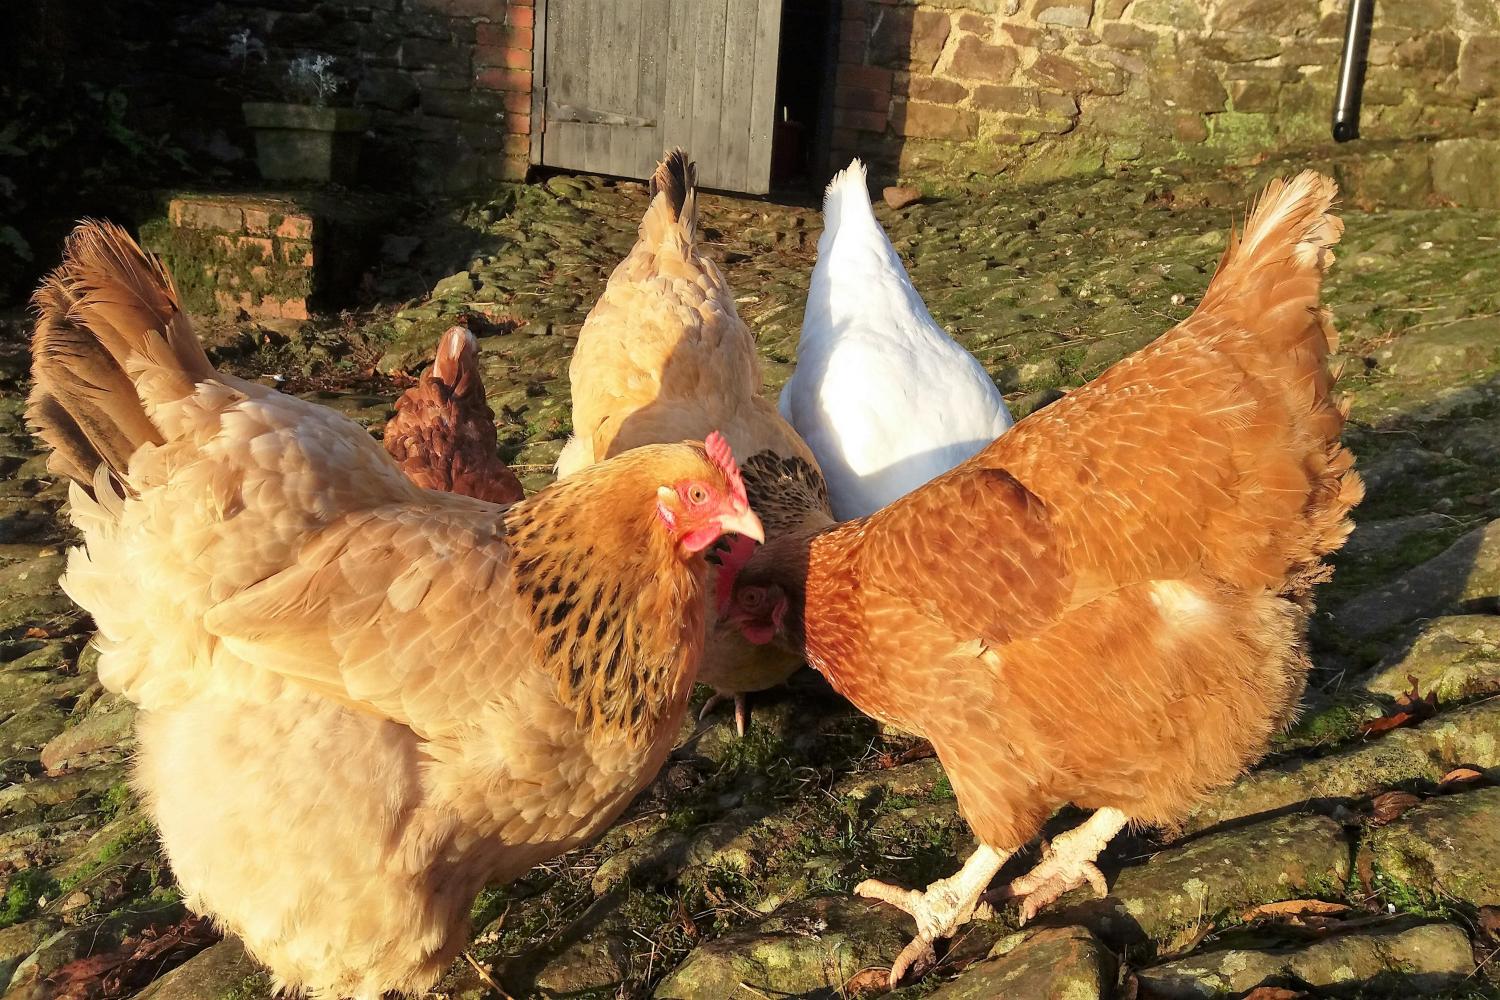 Chickens enjoying the morning sun